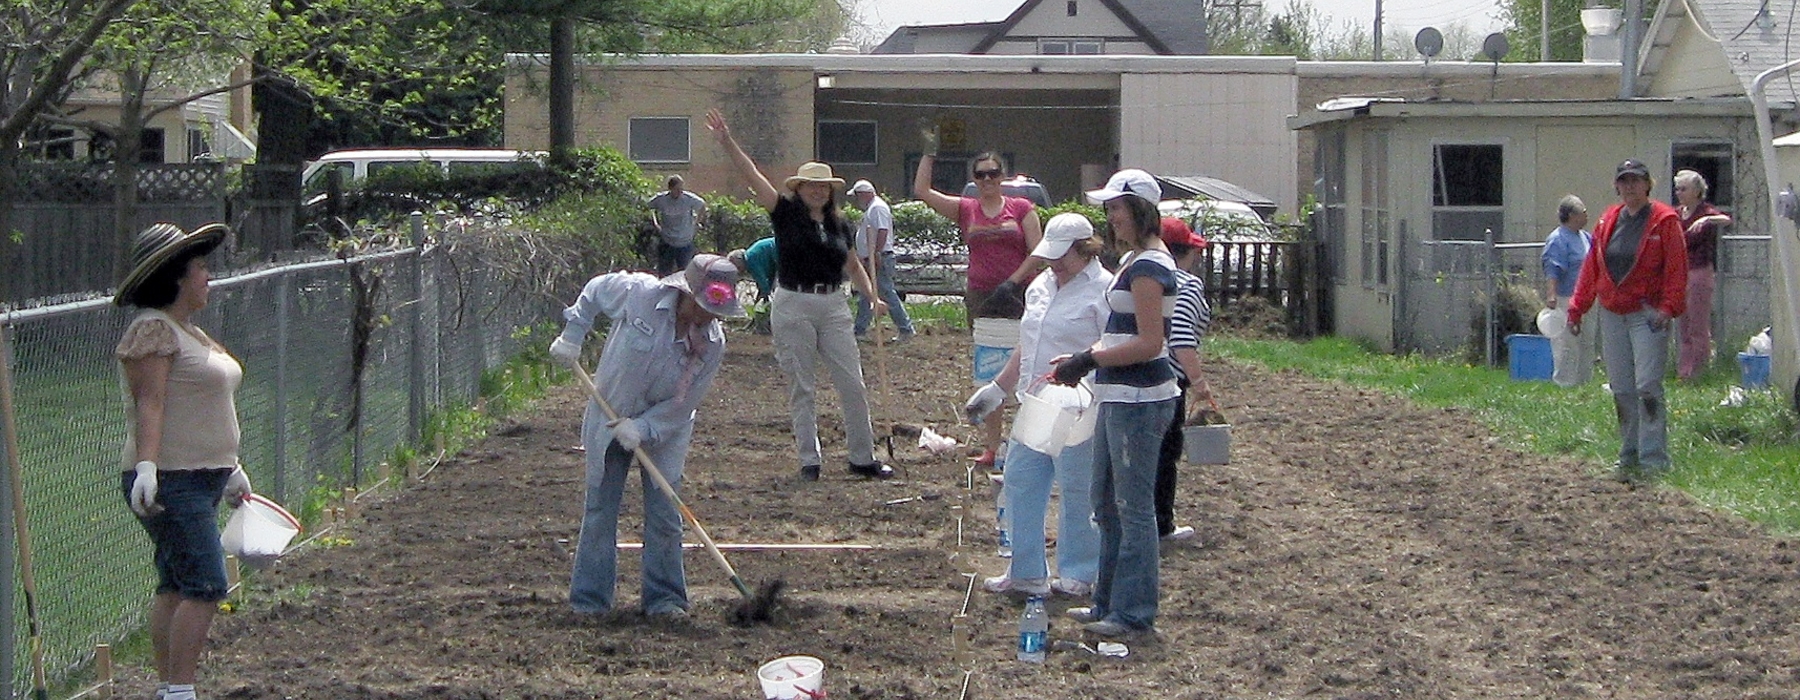 Gardeners working in community garden